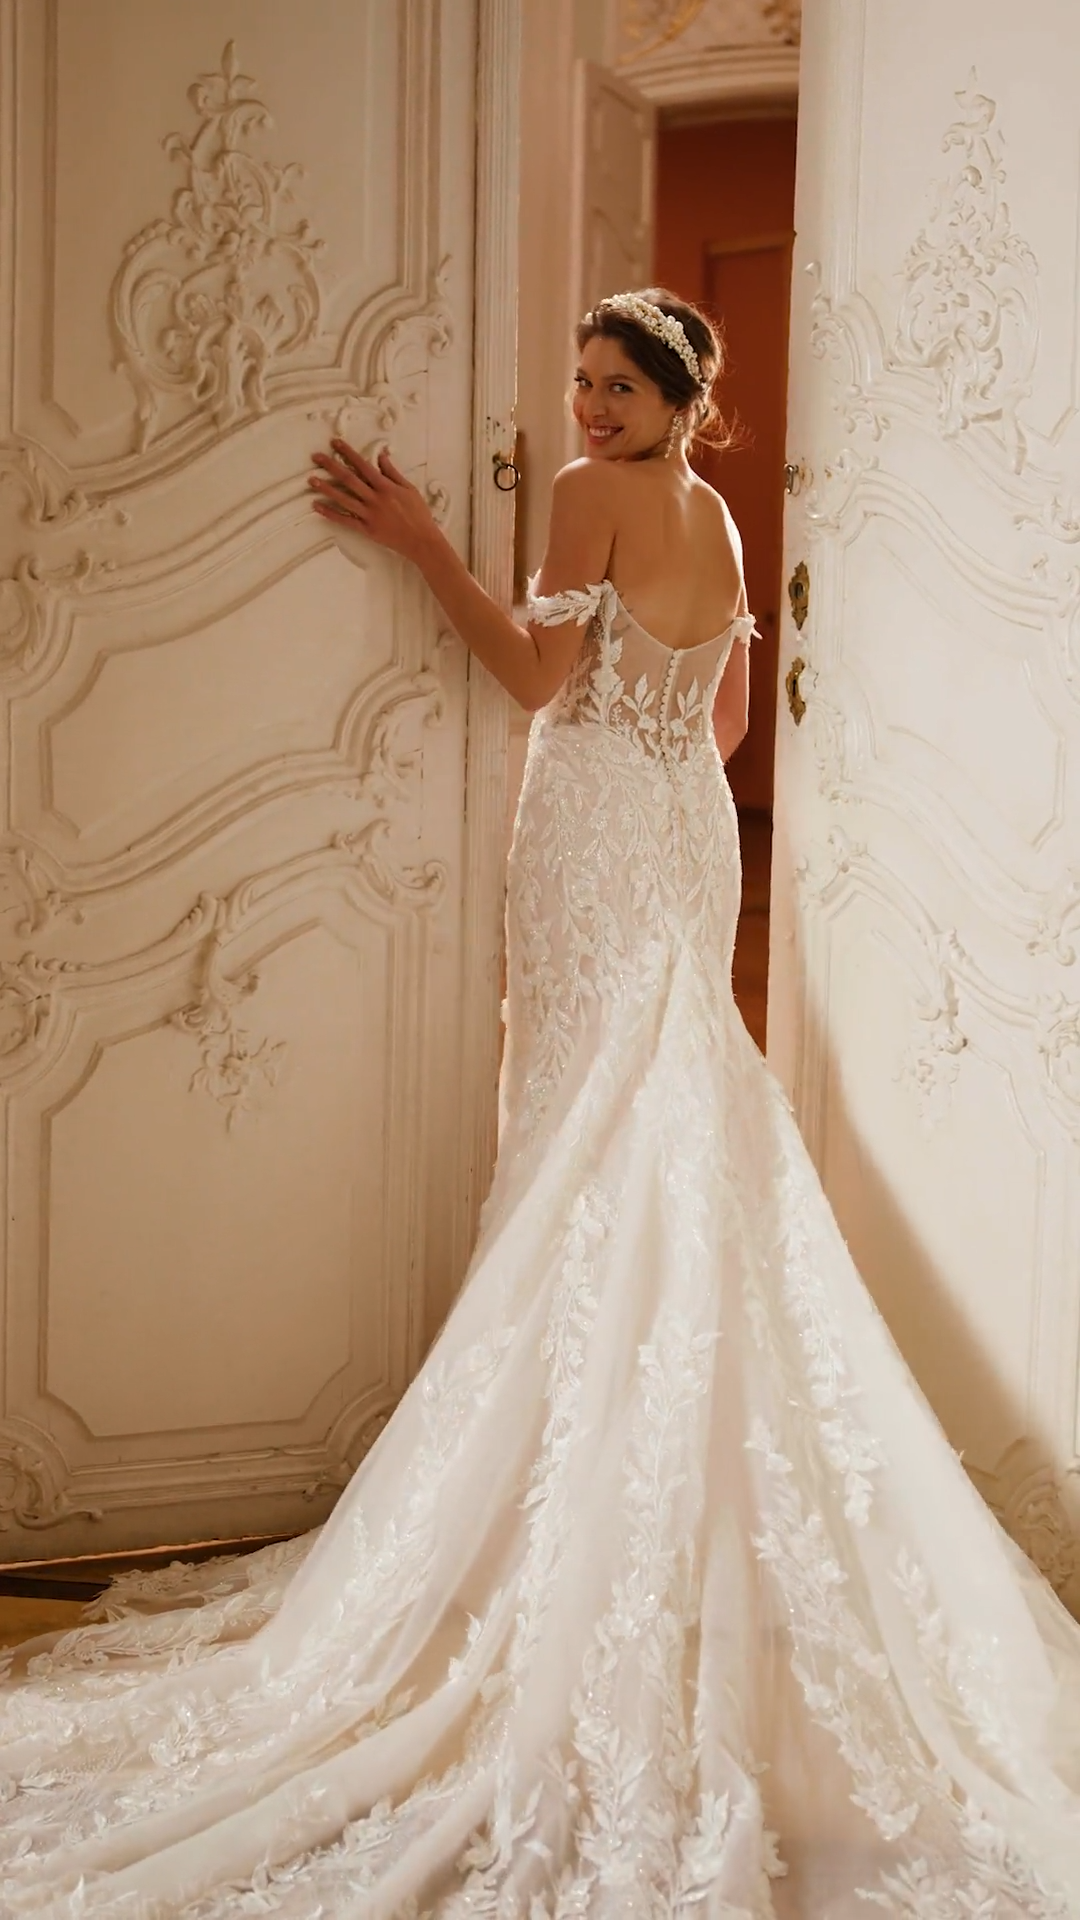 ValStefani REGENT lavish designer wedding dresses for the fancy bride